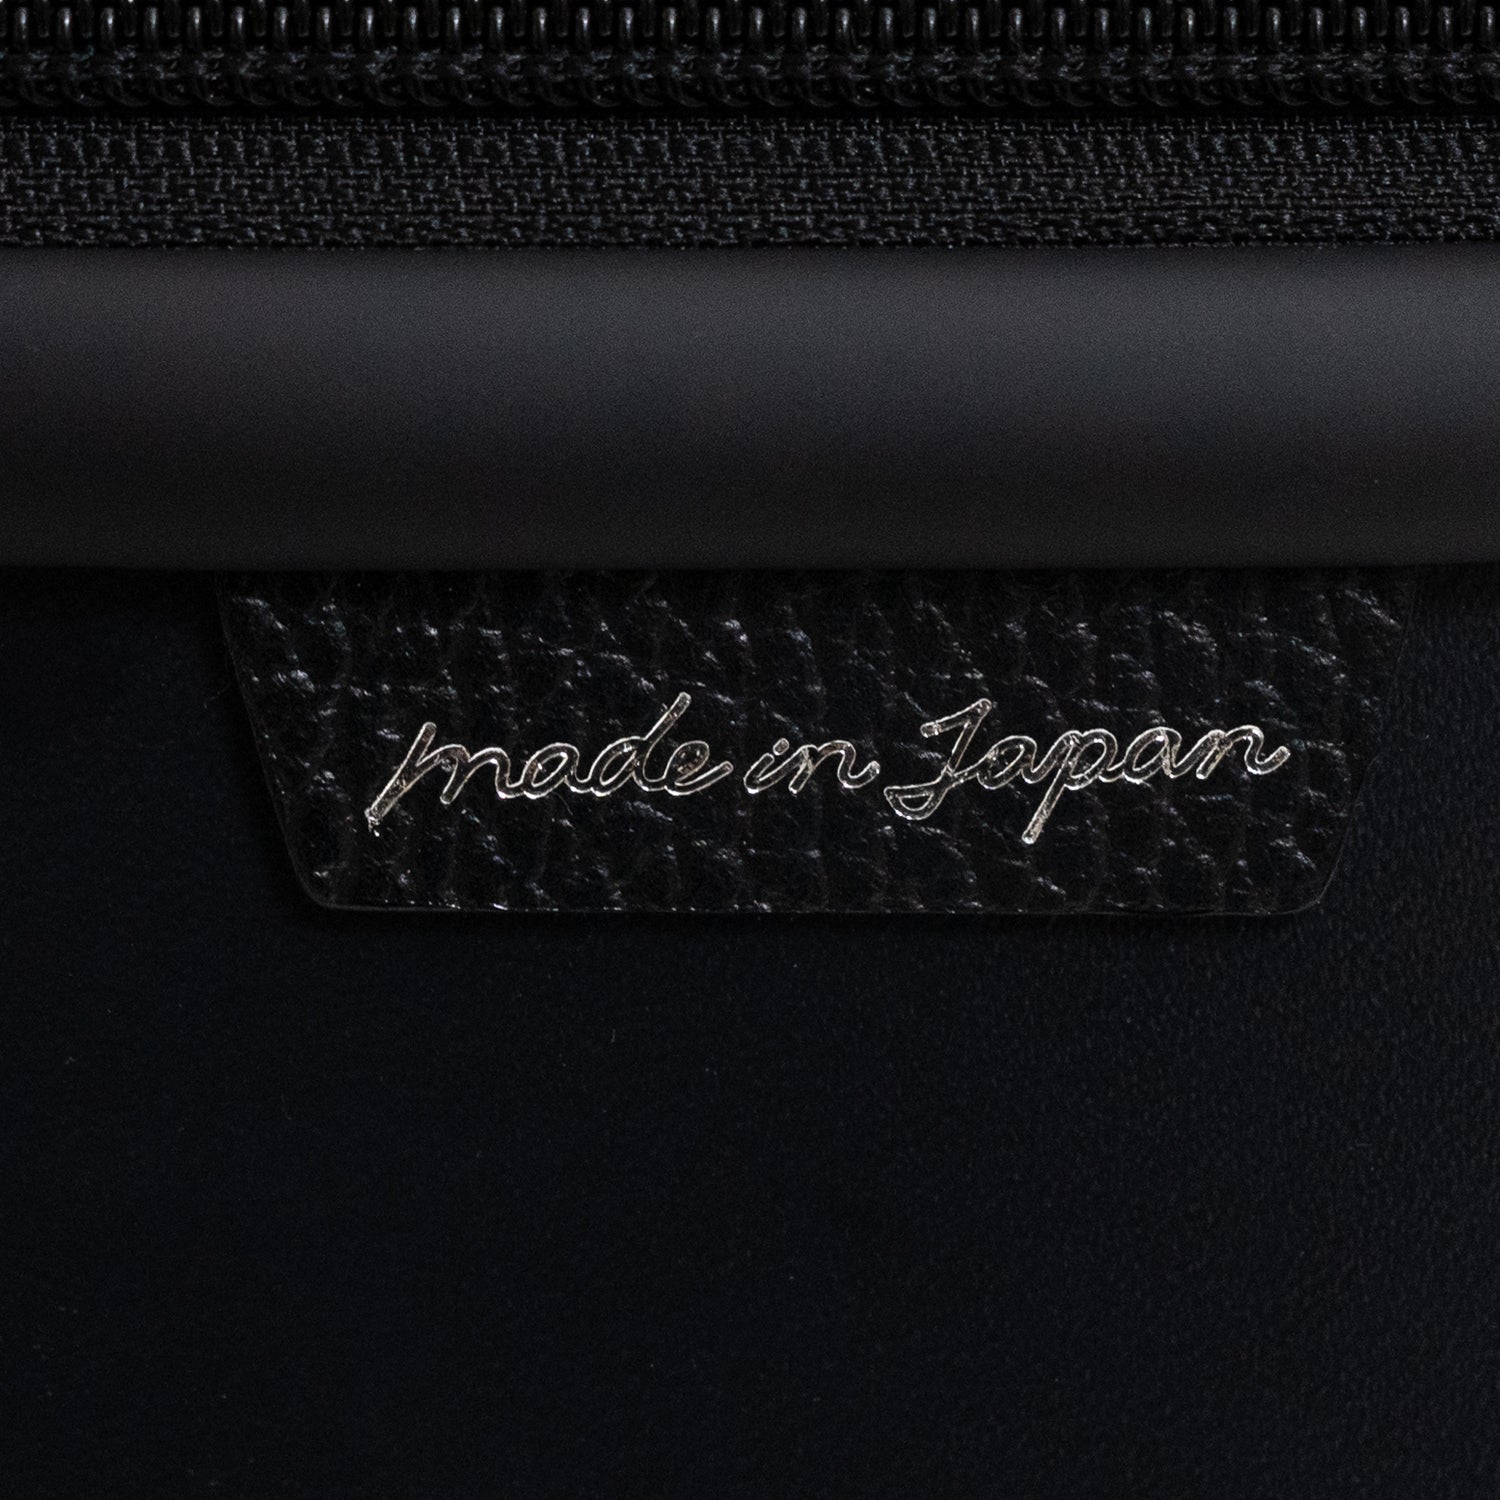 「N700系typeA東海道新幹線モケットハードスーツケース」の側面には、北海道産の牛革シュリンクレザーにメイドインジャパンの刻印が入った日本製の証がついています。